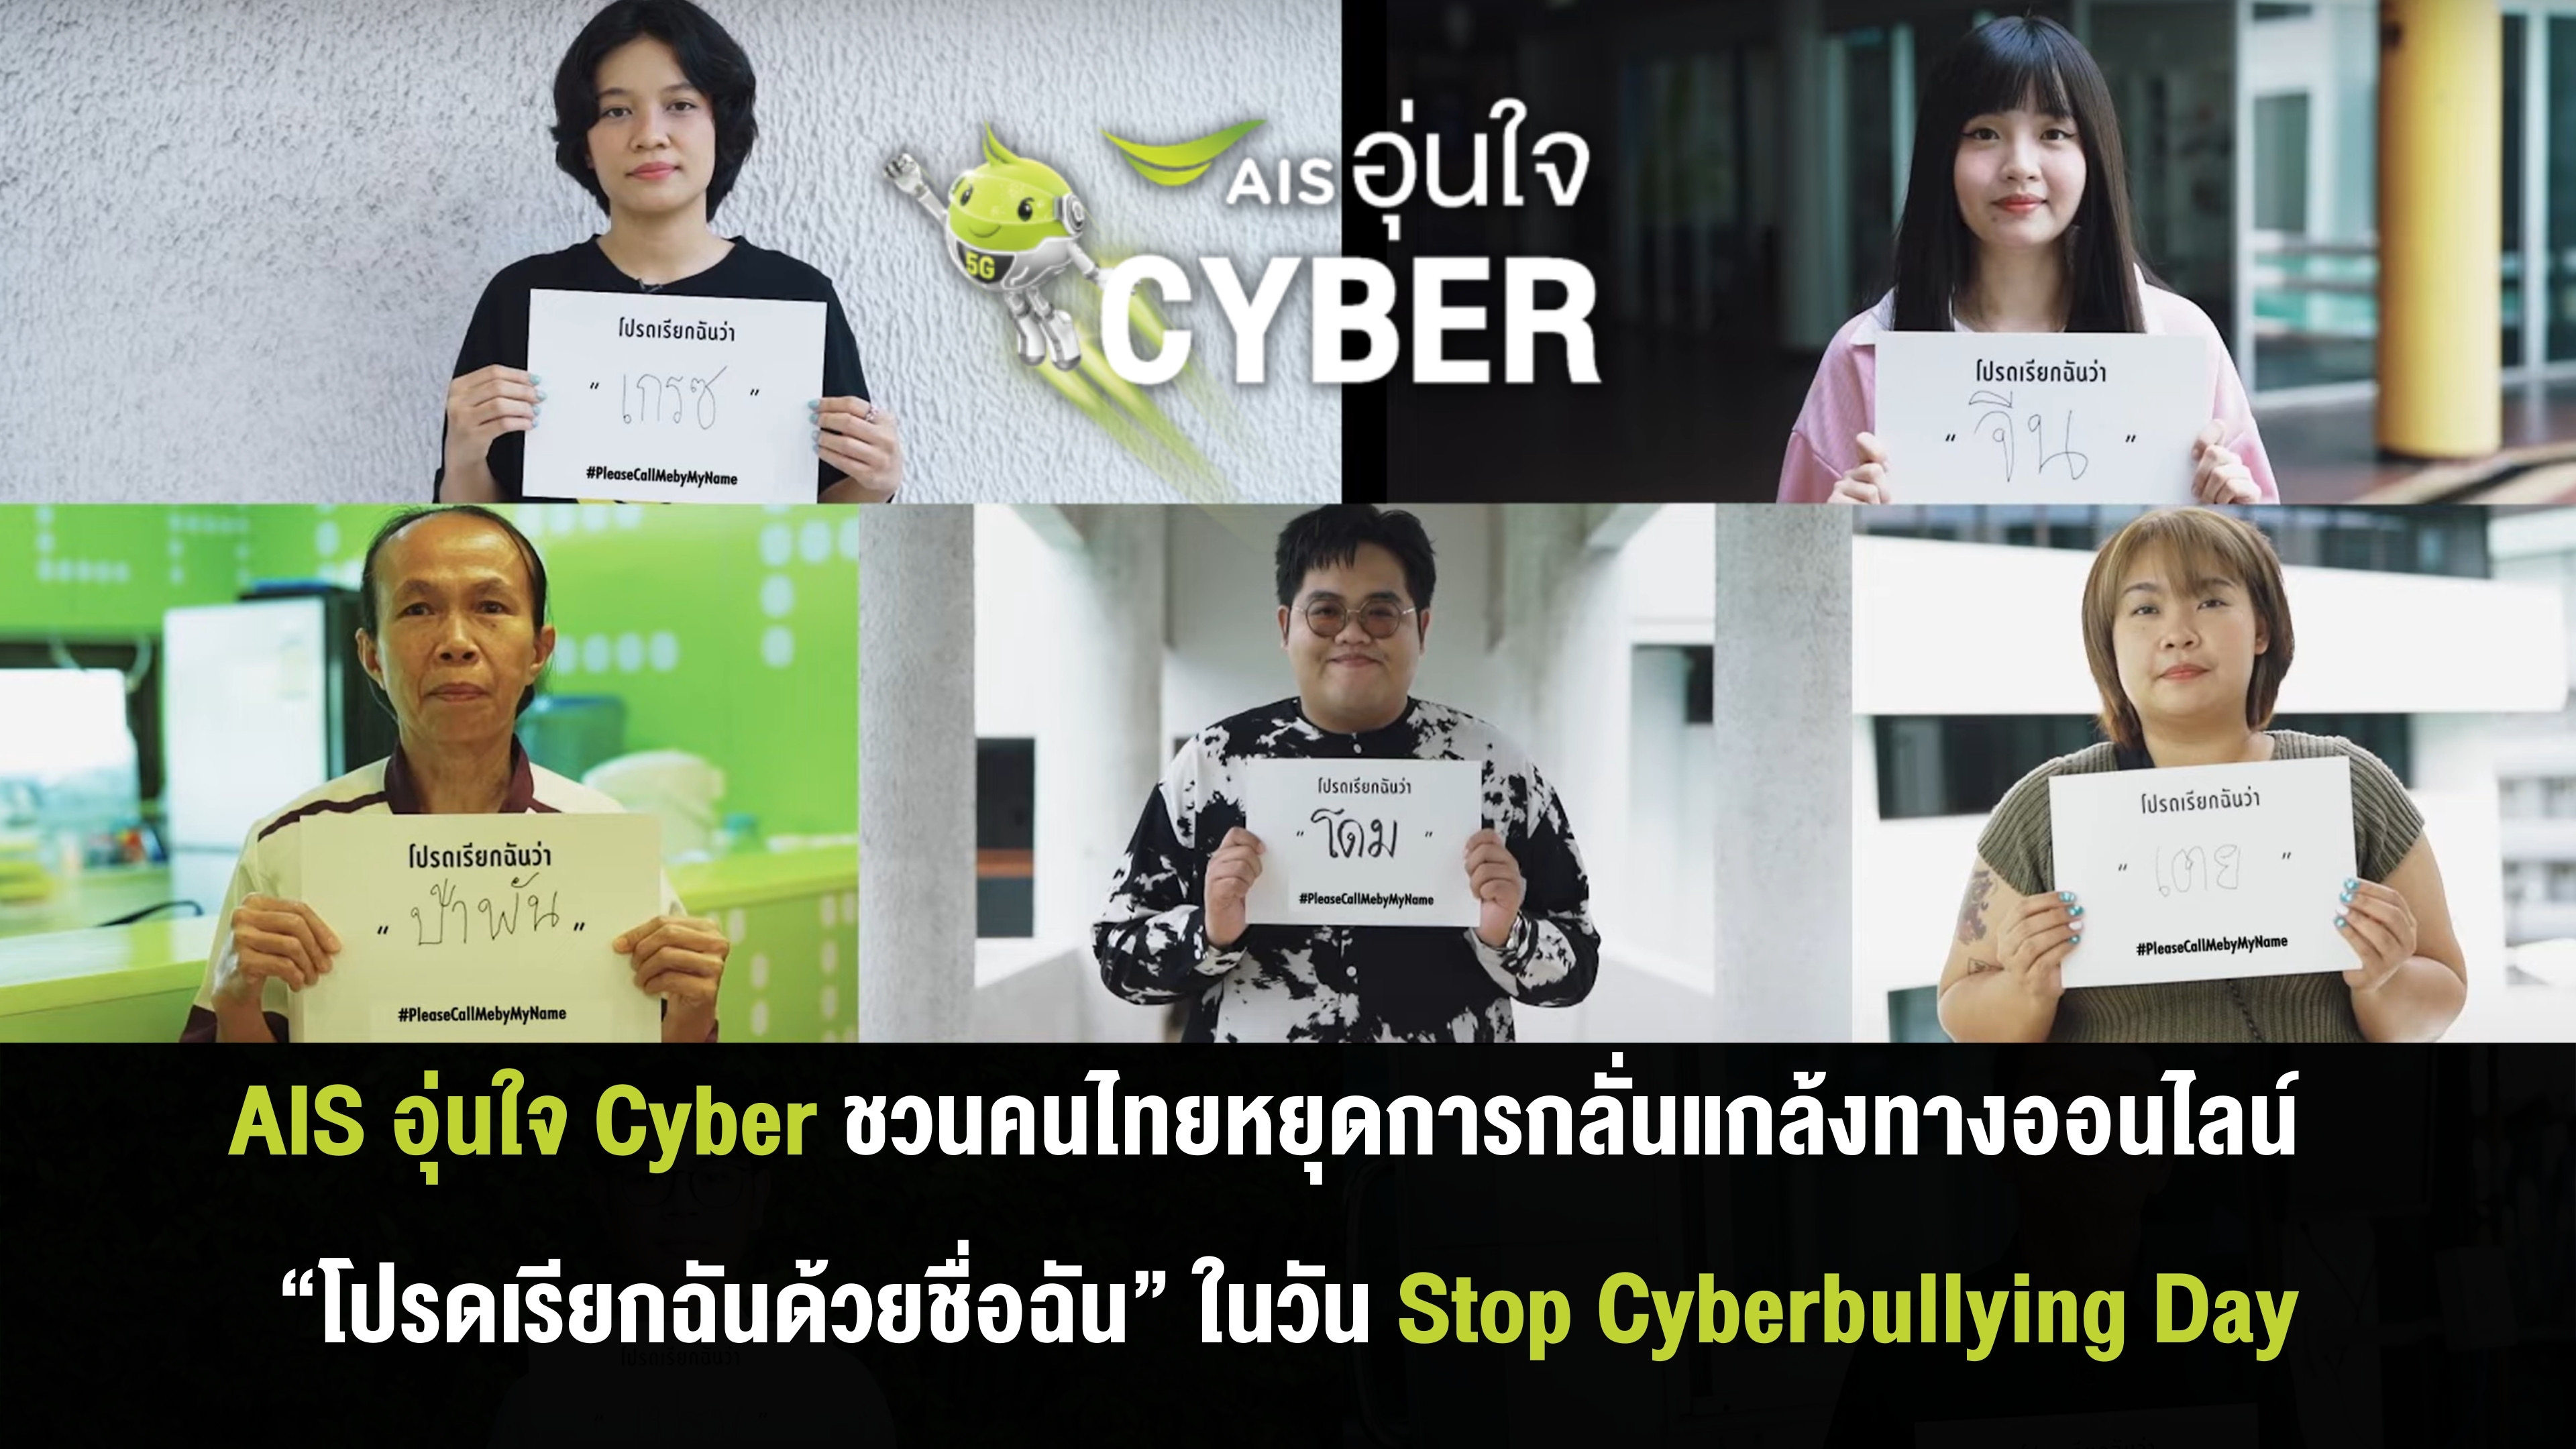 AIS อุ่นใจ Cyber สะท้อนปัญหาการเรียกชื่อล้อเลียน ชวนคนไทยหยุดการกลั่นแกล้งทางออนไลน์ “โปรดเรียกฉันด้วยชื่อฉัน” ในวัน Stop Cyberbullying Day